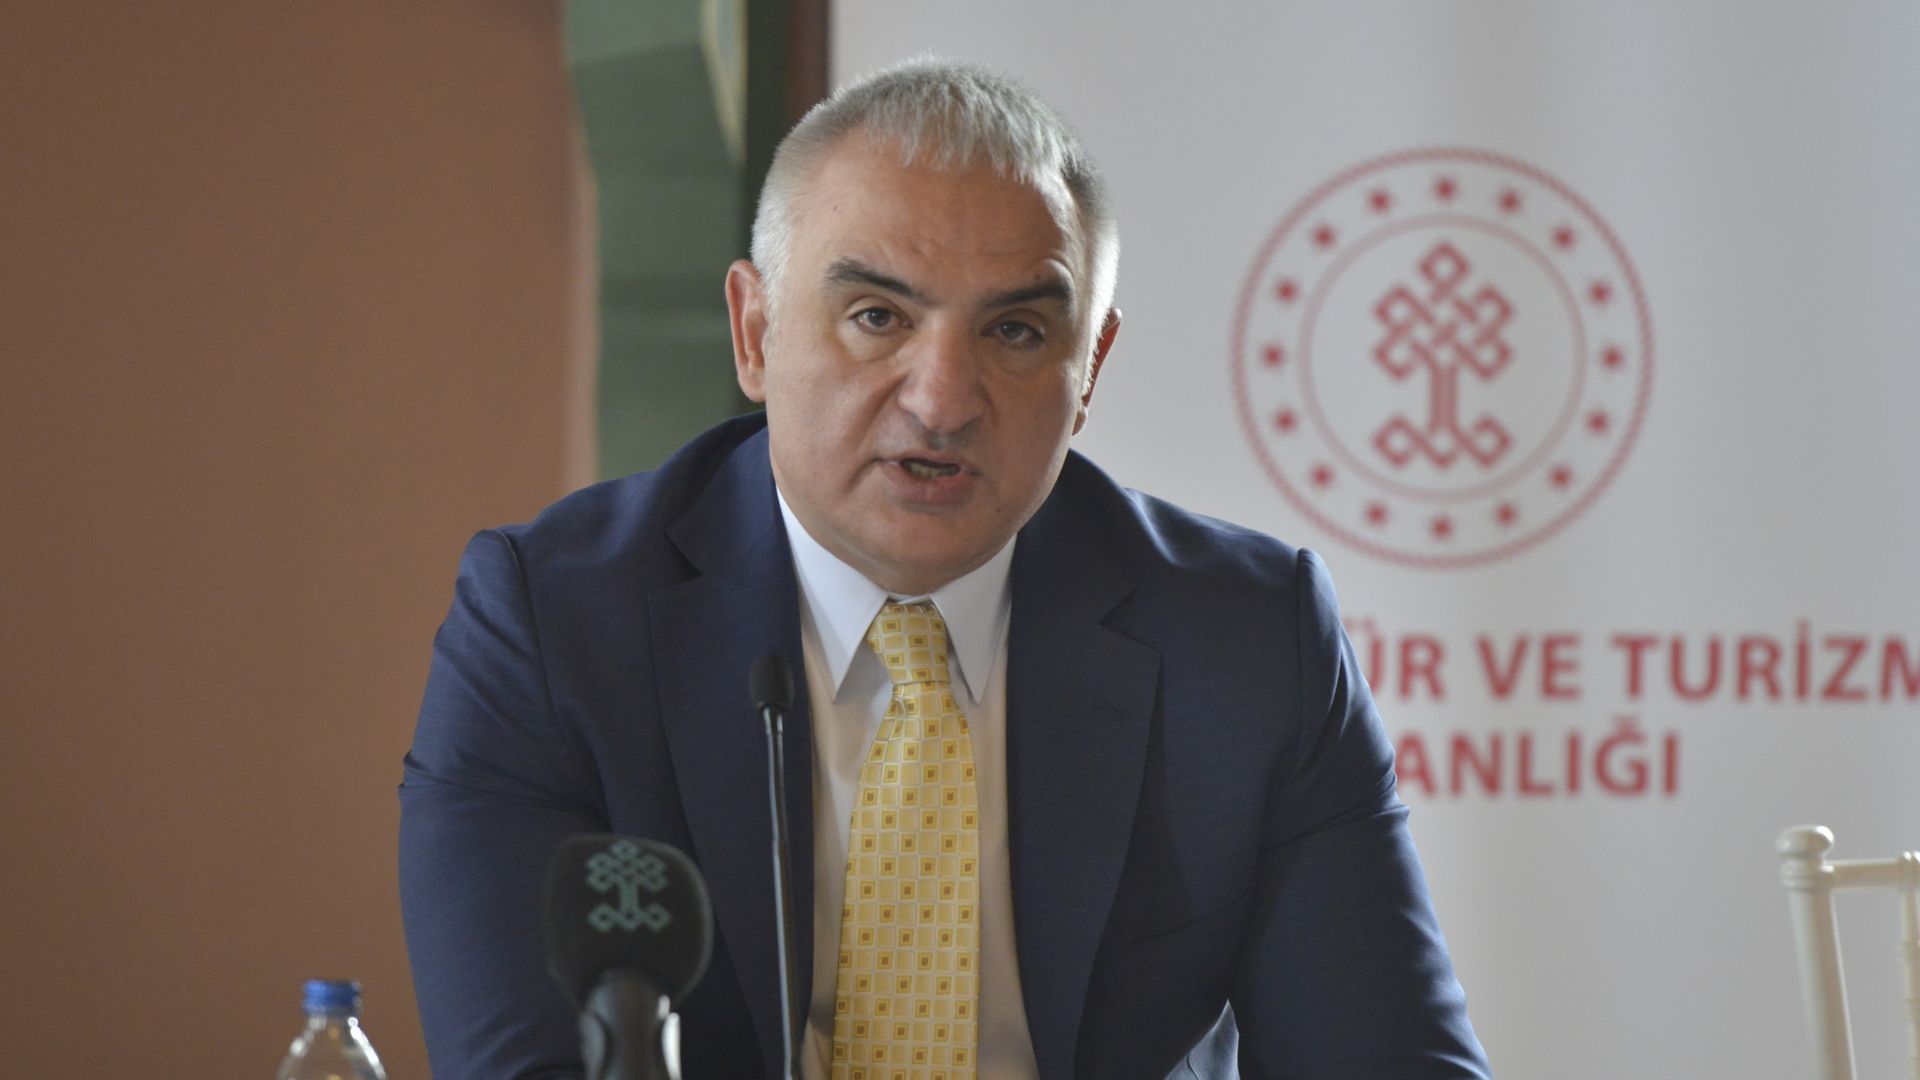 Kültür Bakanı Ersoy'dan 'Kanun Hükmü' açıklaması: Sanatın gücüyle terör örgütü propagandası yapılmasına karşıyız